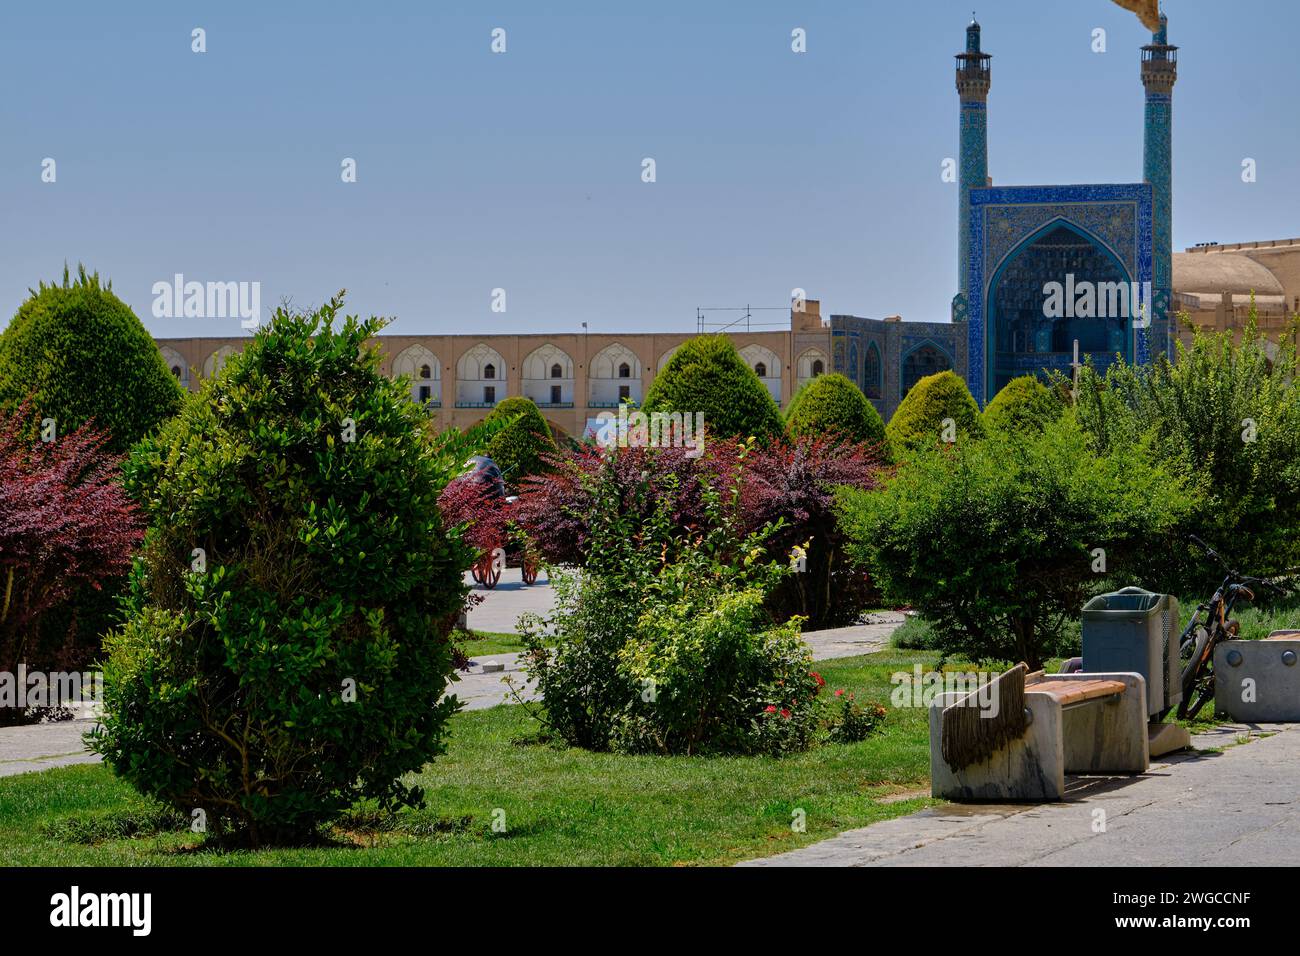 Isfahan, Iran, 06.30.2023: Naqsh-e Jahan Square, Architecture details and life in Naqsh-e Jahan Square, esfehan, iran Stock Photo